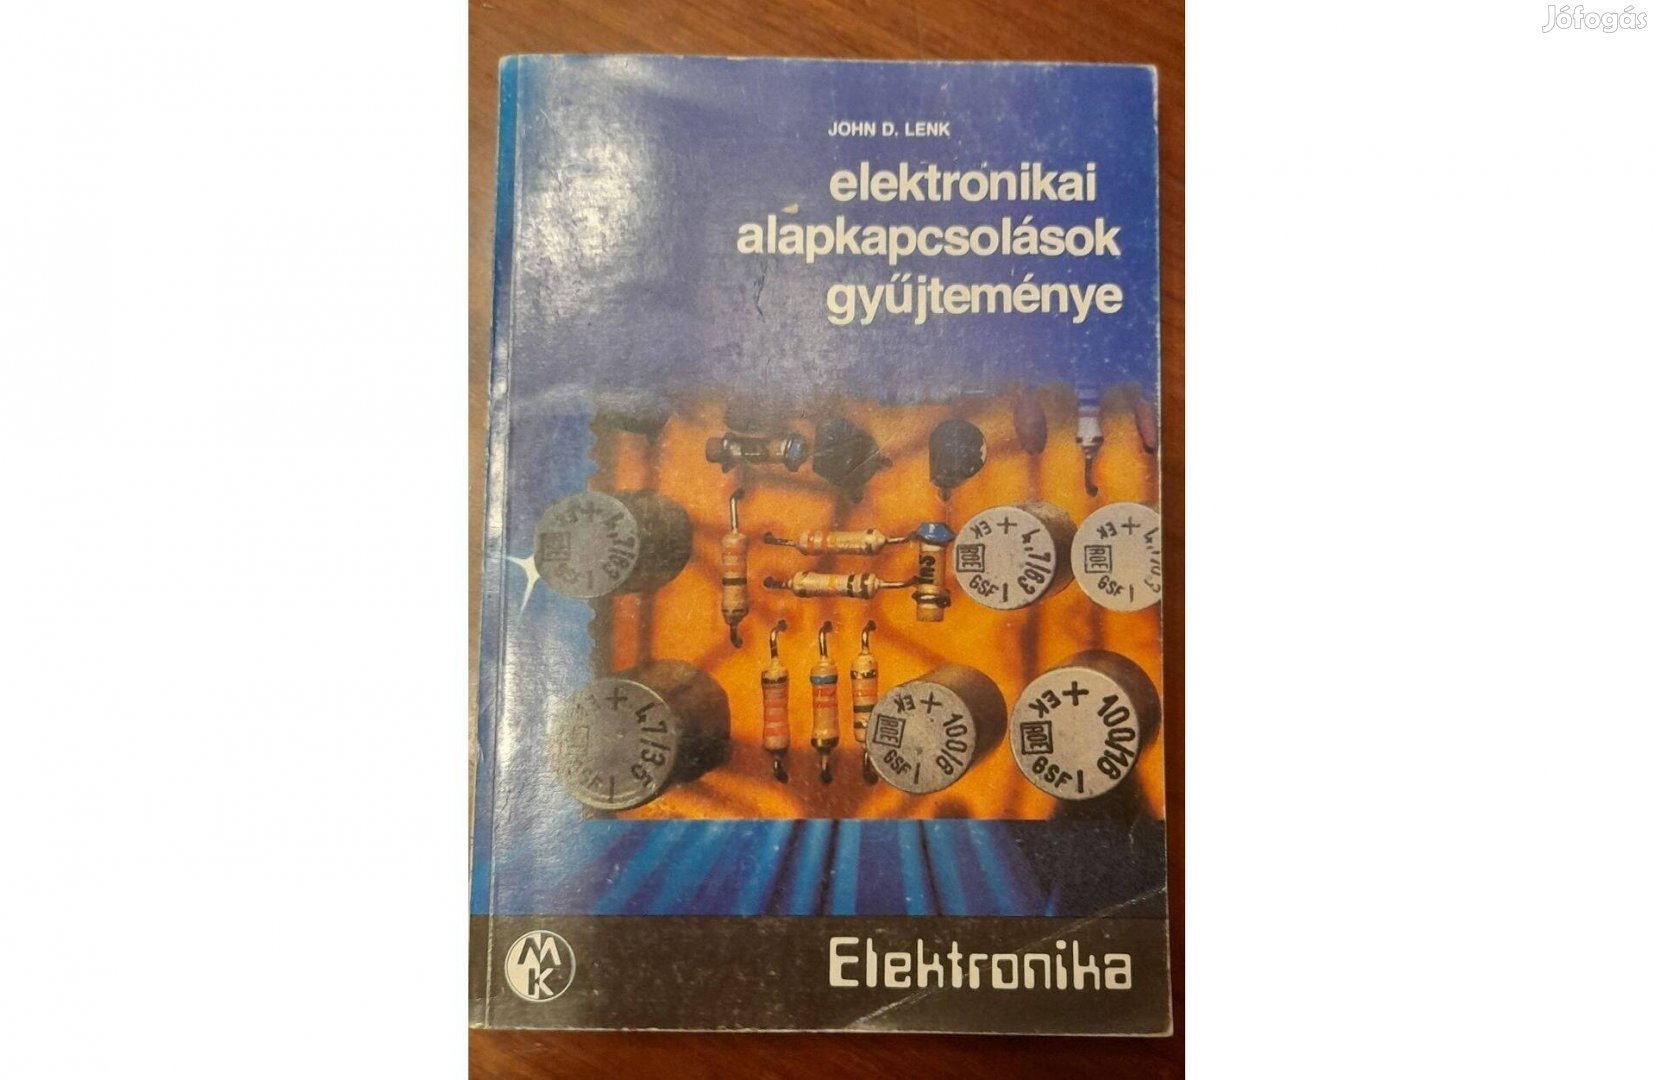 John D. Lenk: elektronikai alapkapcsolások gyűjteménye - könyv